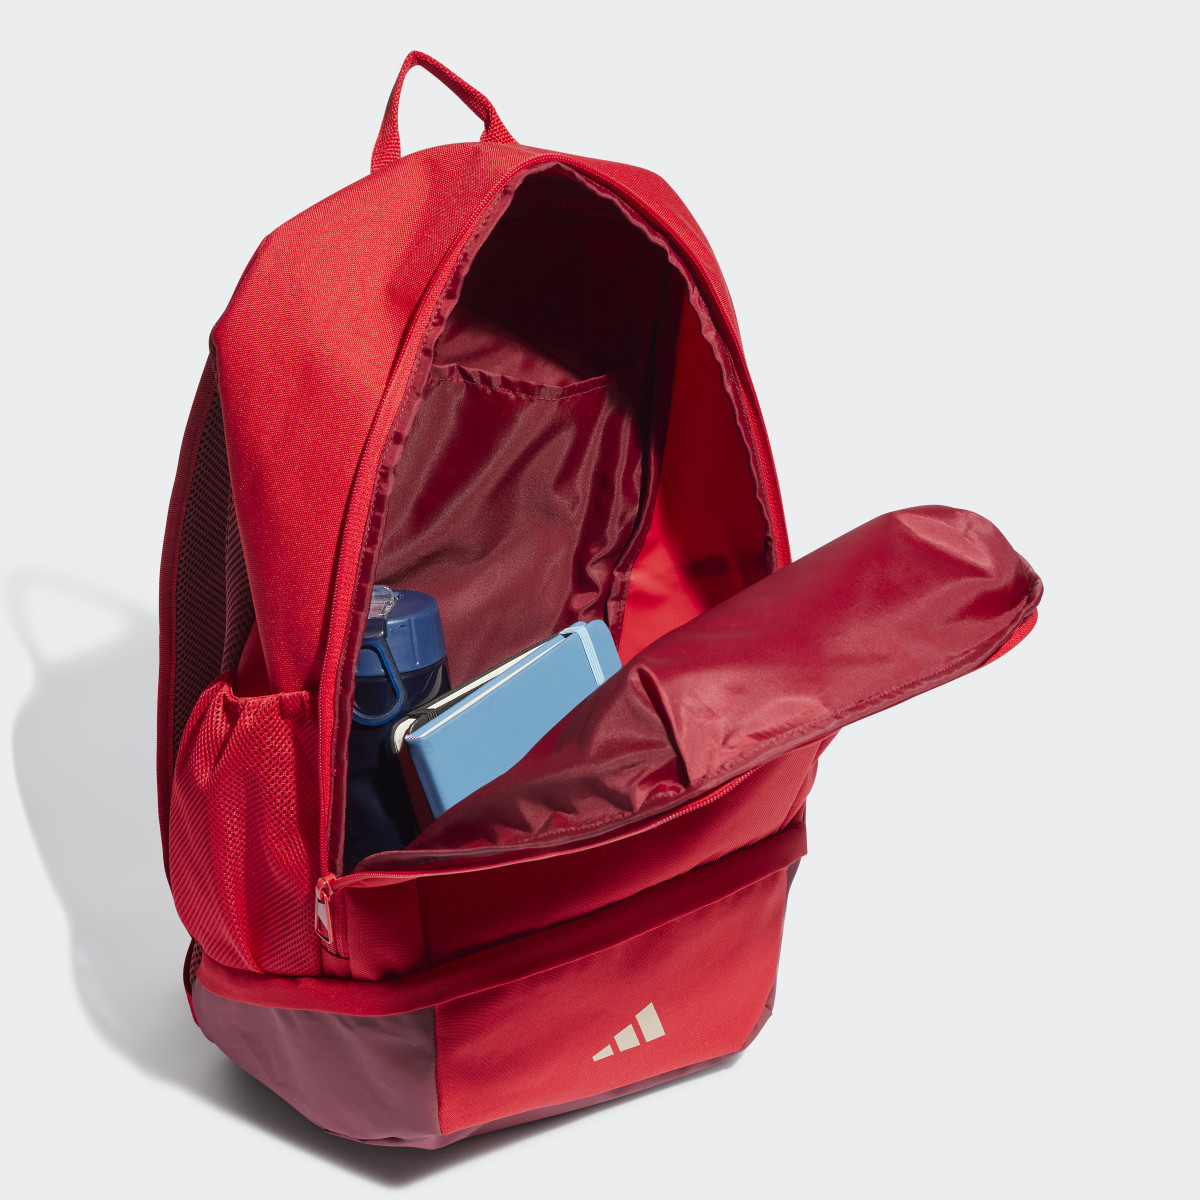 Adidas Arsenal Backpack. 5